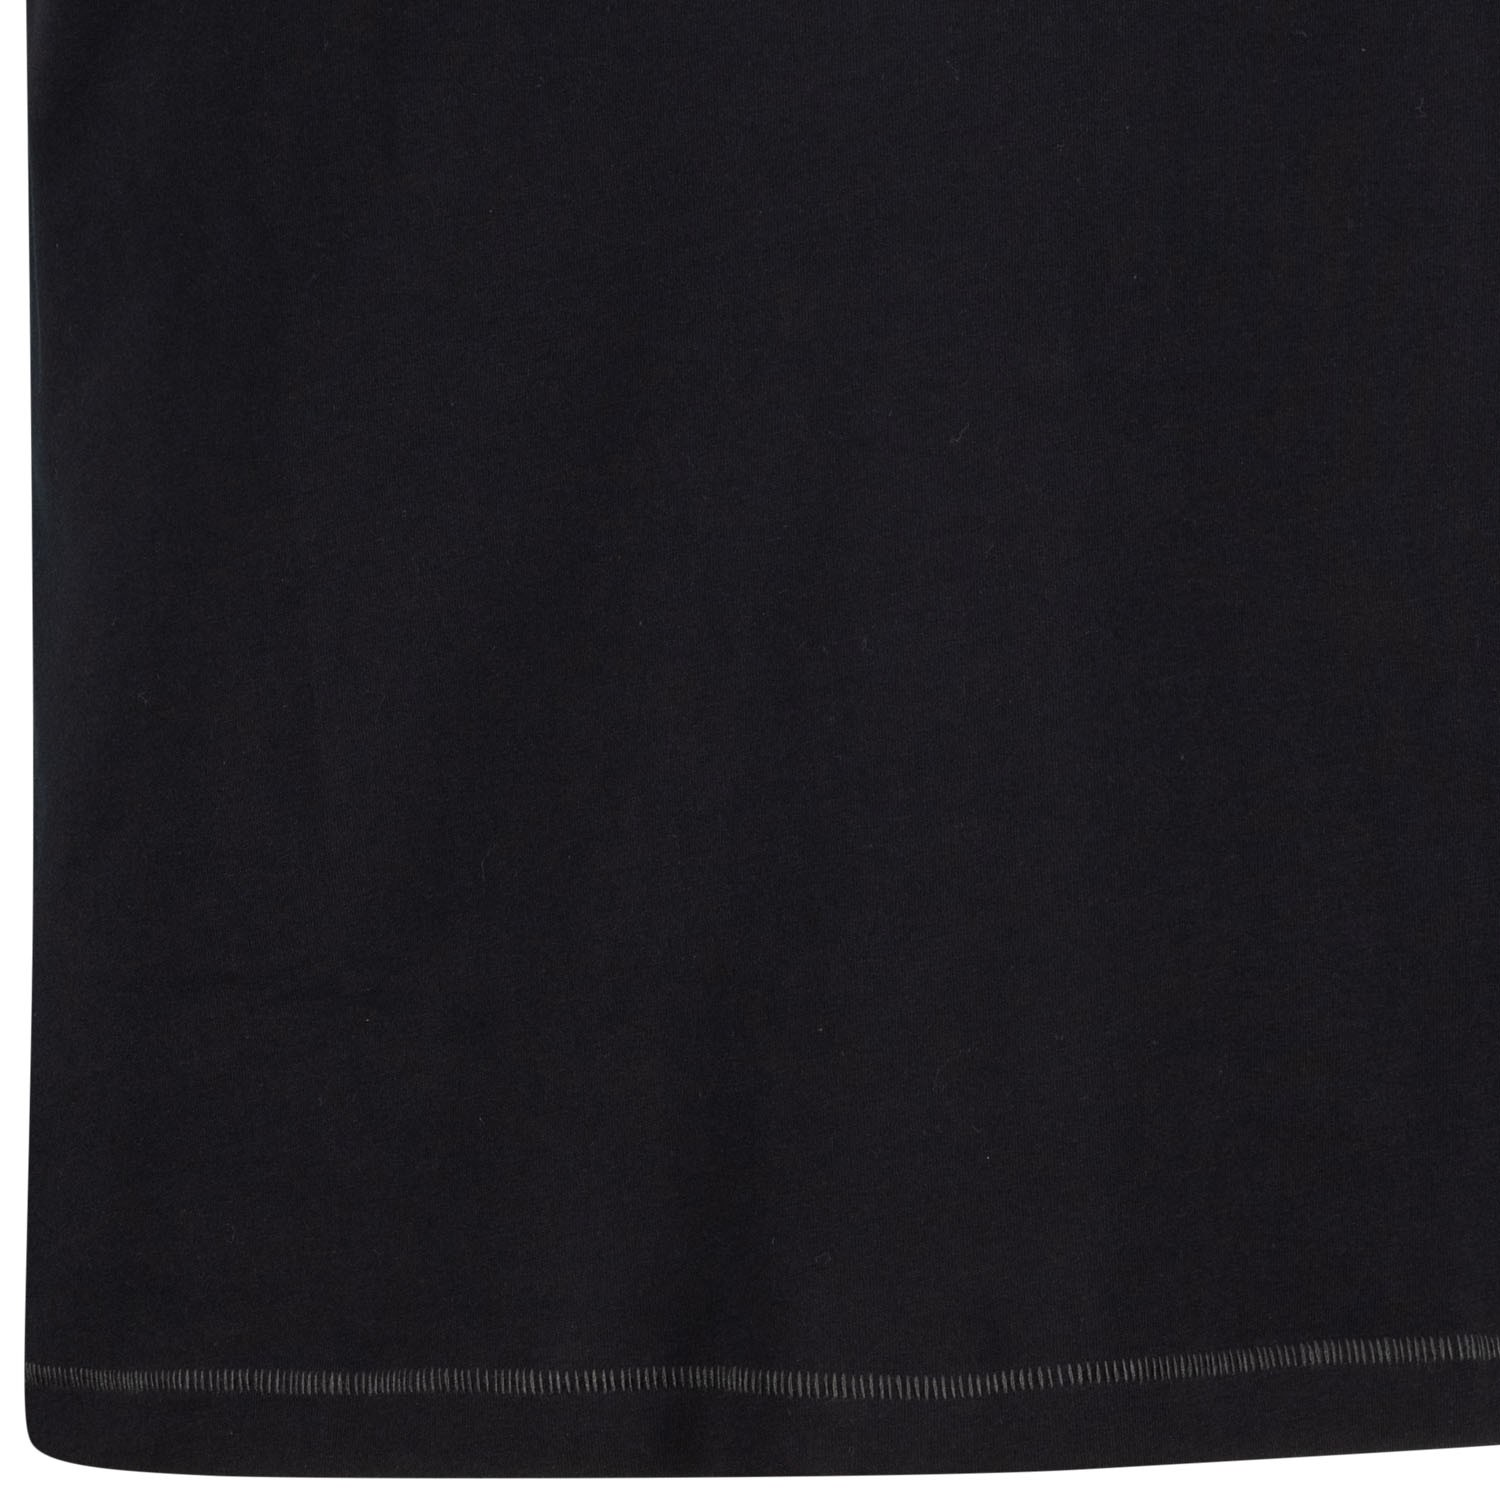 Motivshirt mit Rundhals Serie "LONGBOARD" bedruckt in Übergrößen bis 10XL Regular Fit von ADAMO in schwarz für Herren